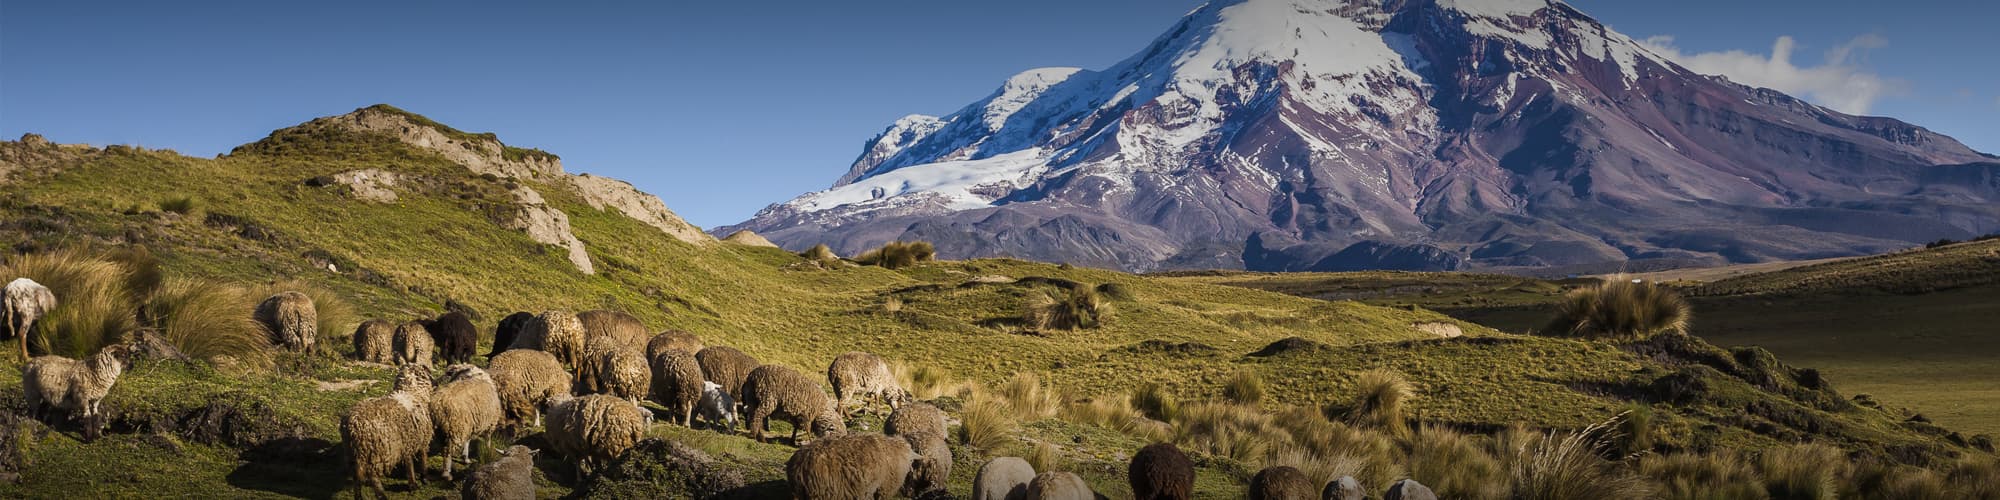 Alpinisme Equateur © PatricioHidalgoP / Istock